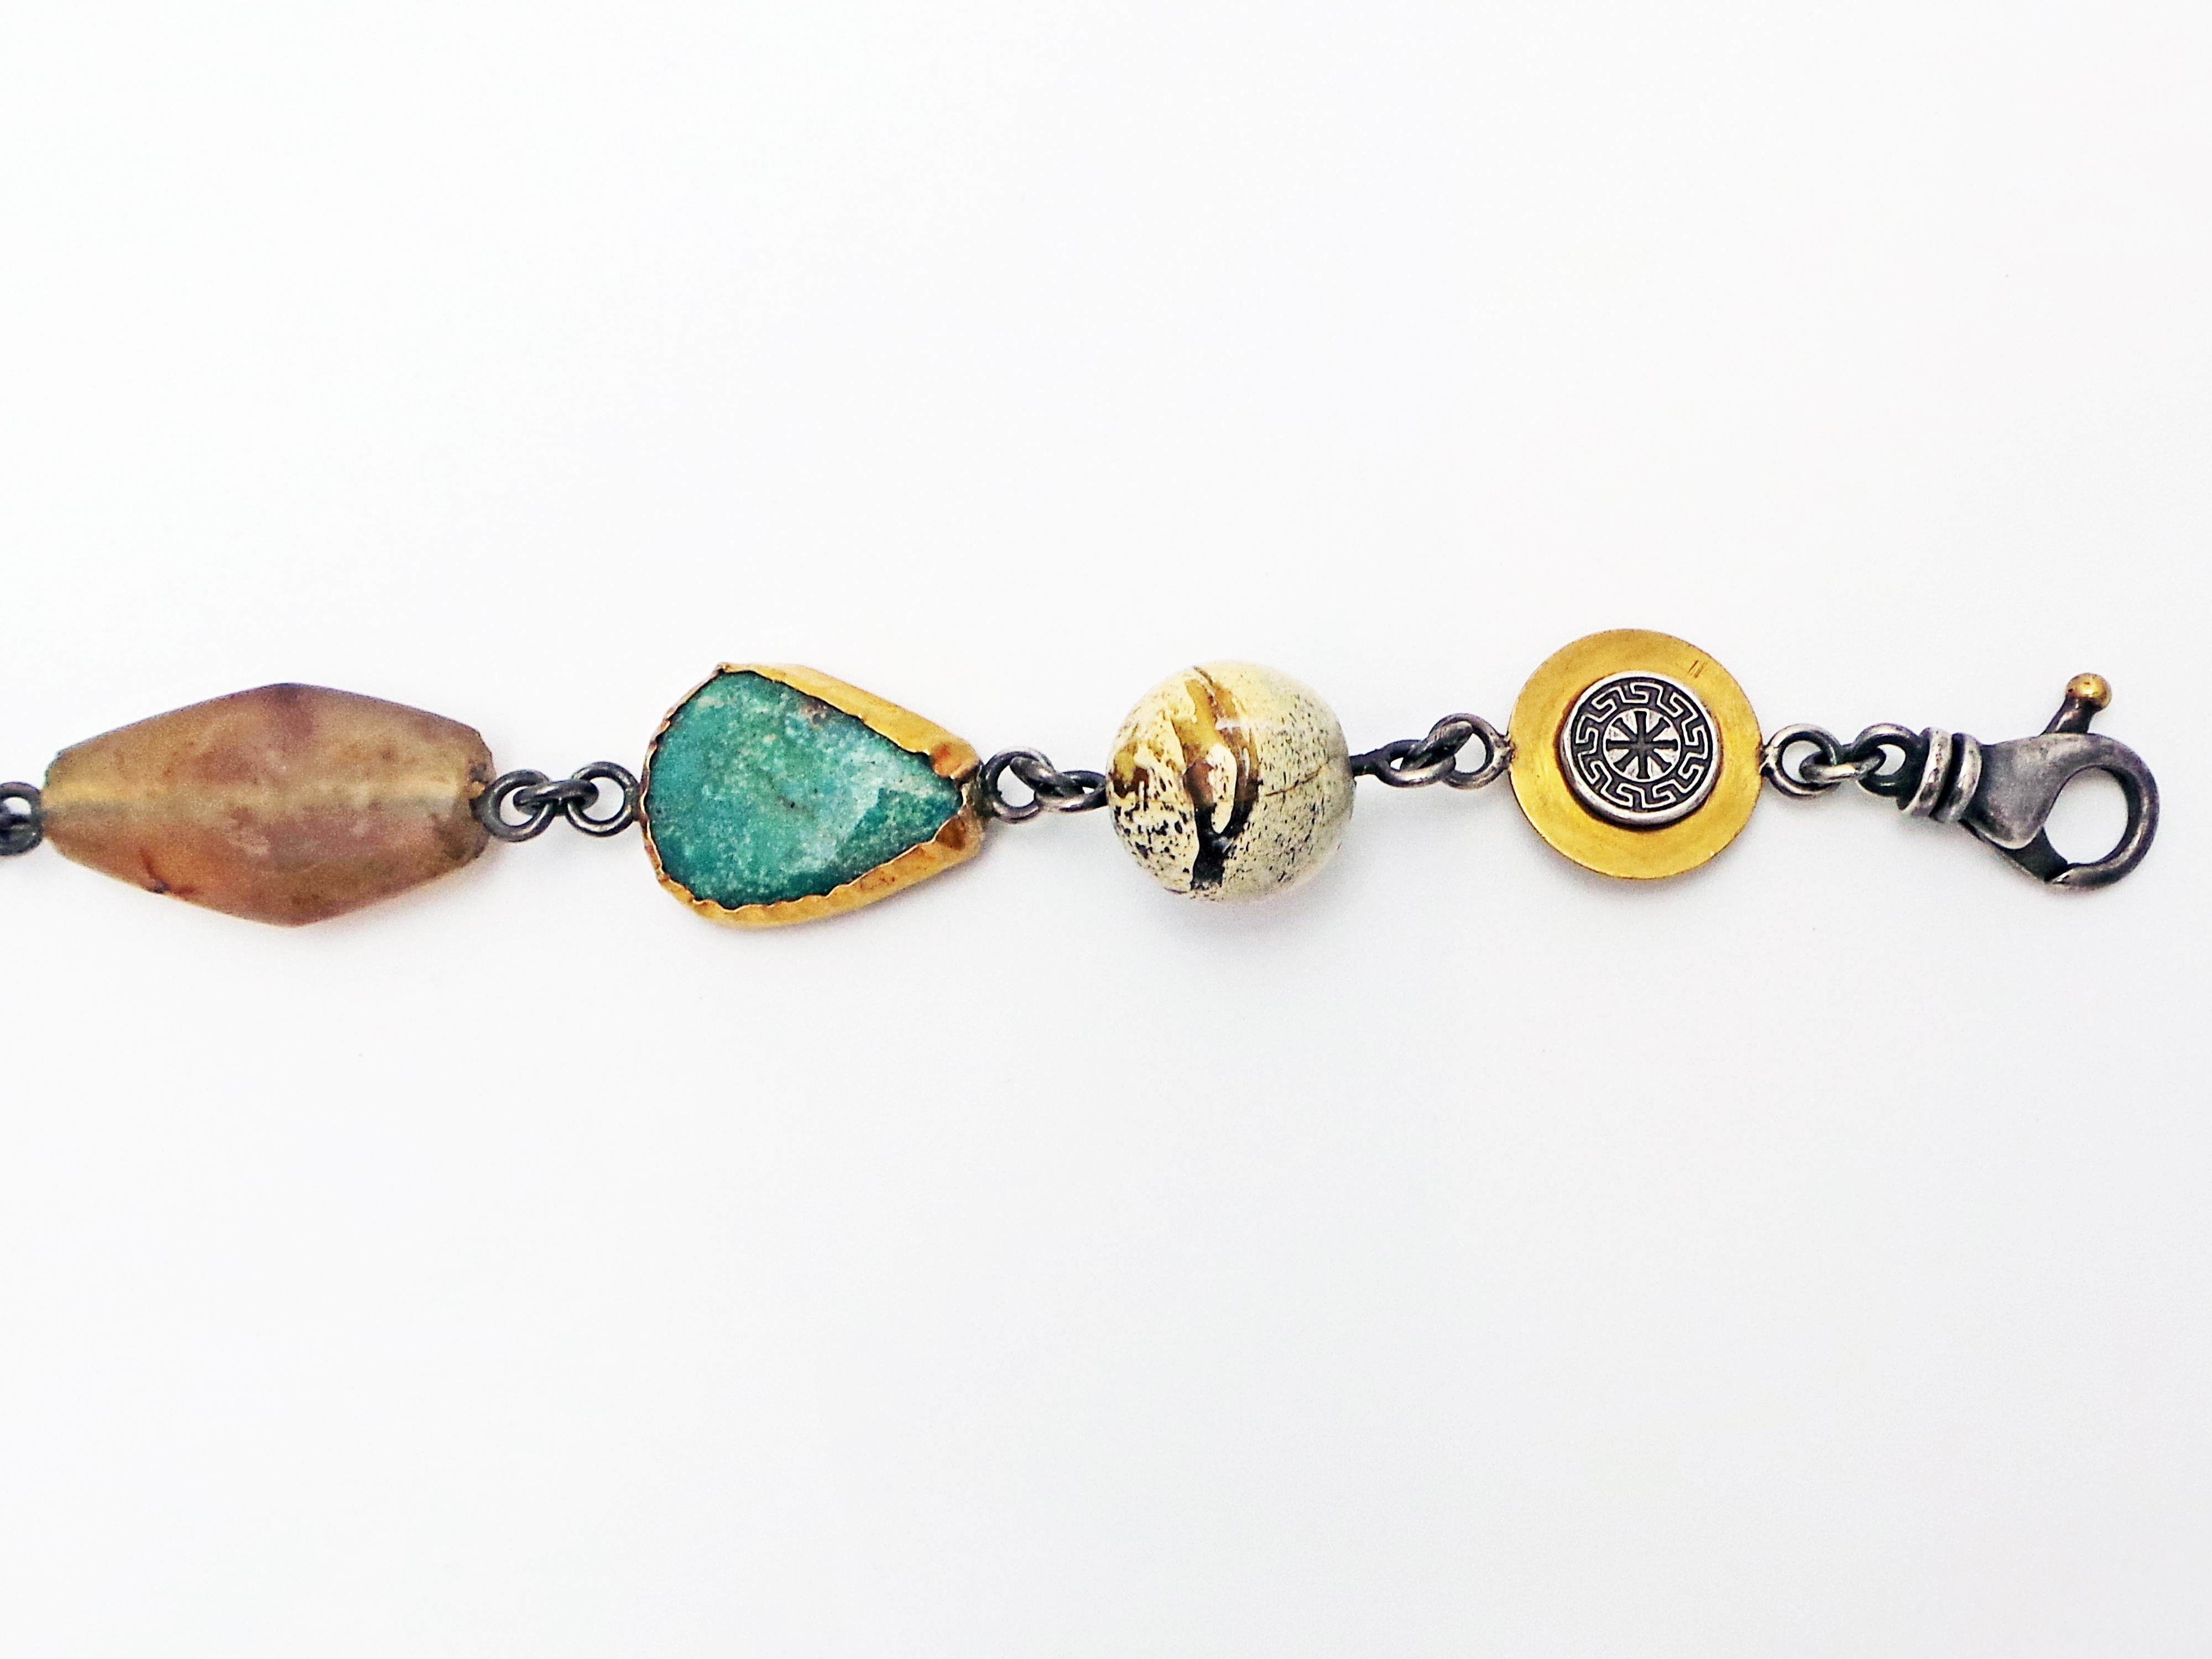 Collier de Bohême composé d'une ancienne pièce de bronze byzantine, de perles de cornaline, d'agate et de calcédoine, d'une pointe de flèche en pierre, d'une turquoise Kings Manassa (provenant d'une mine fermée du Colorado, États-Unis), d'une perle